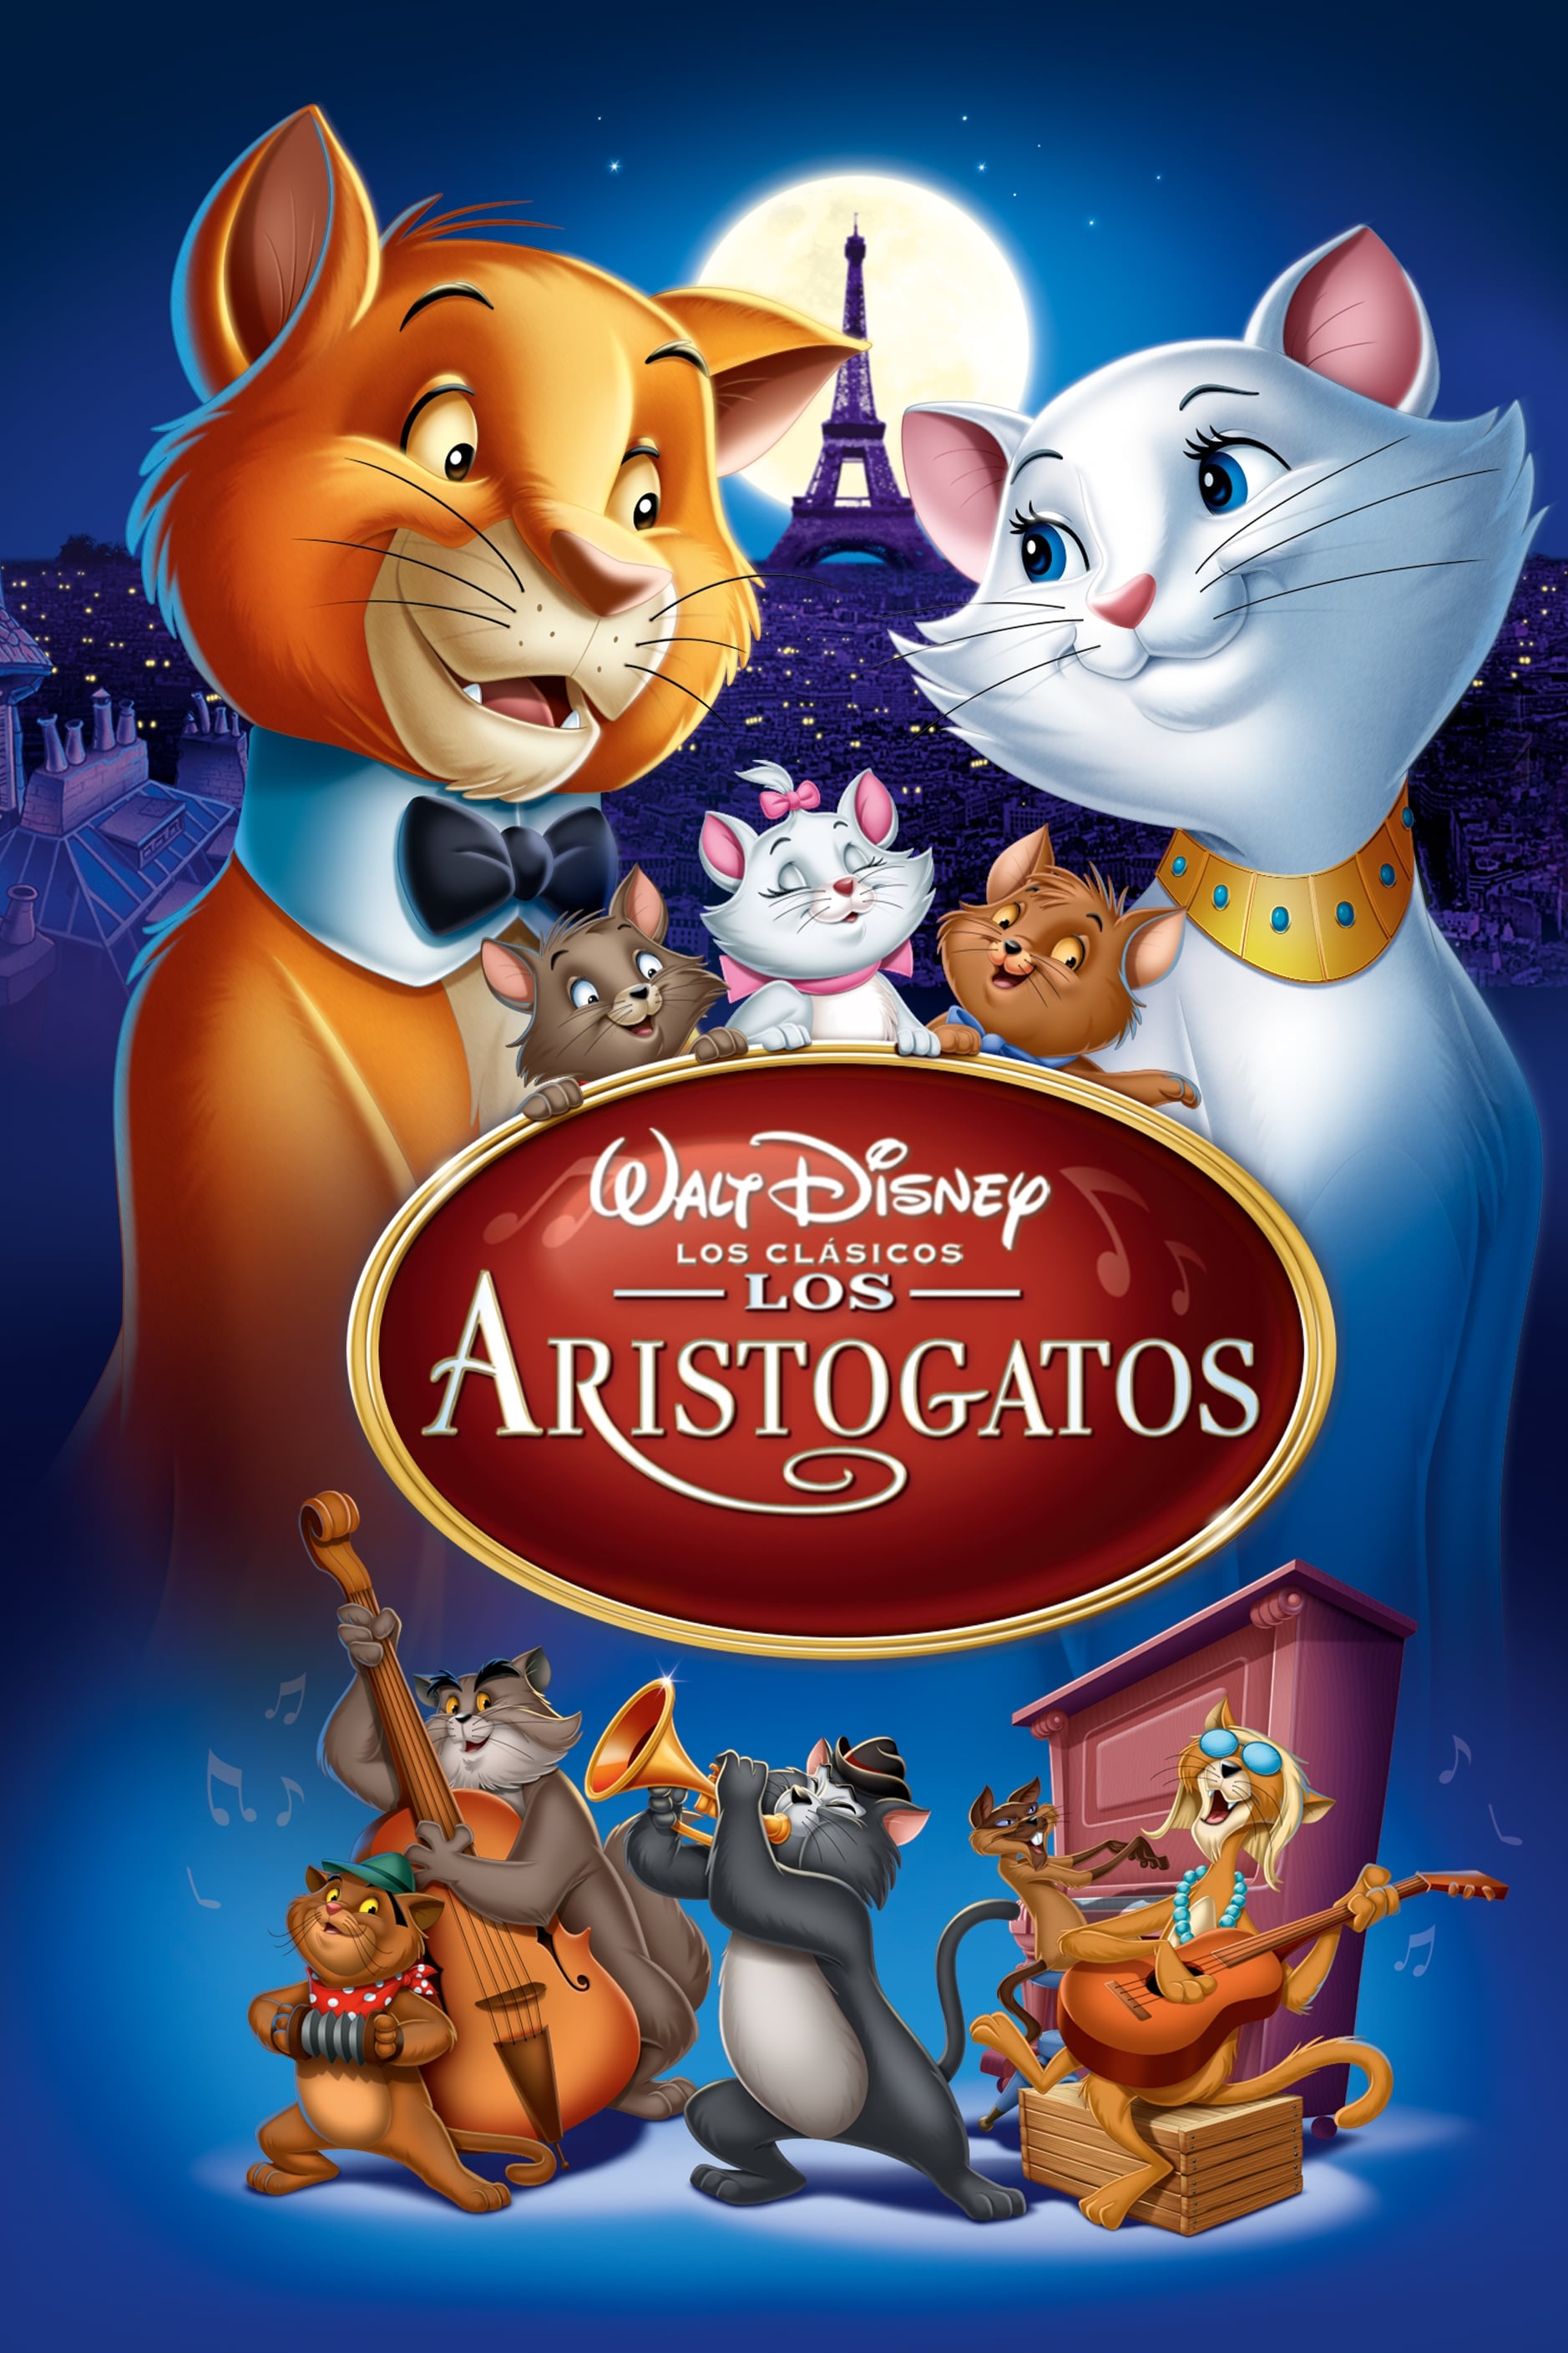 Los aristogatos en el Top 6 de películas protagonizadas por gatos